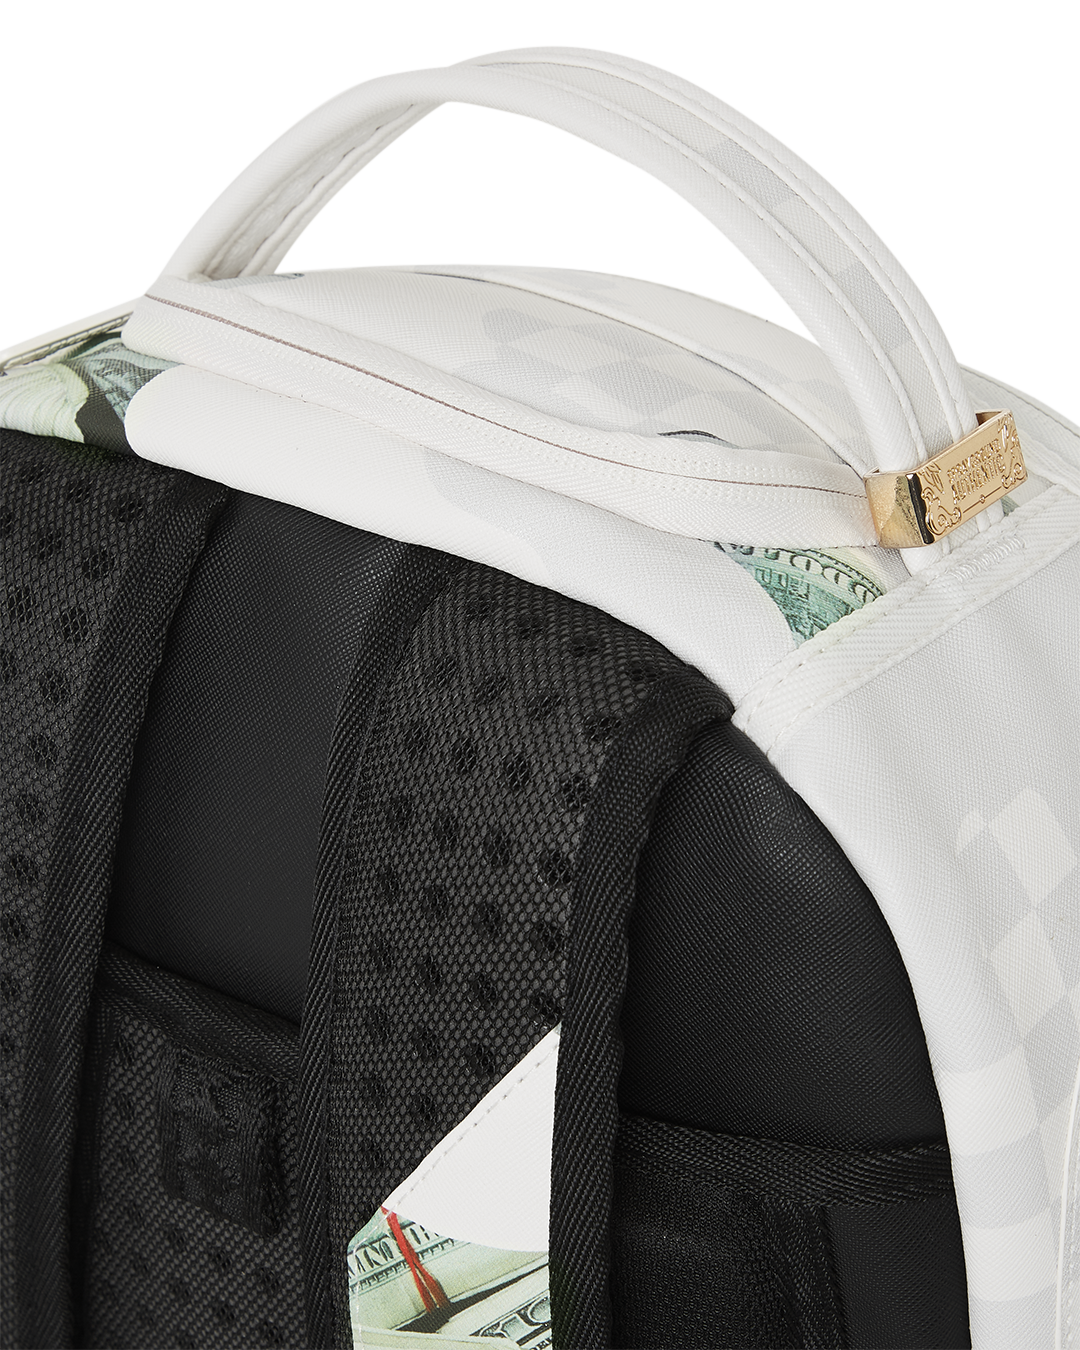 Sprayground - Money Check Grey Backpack